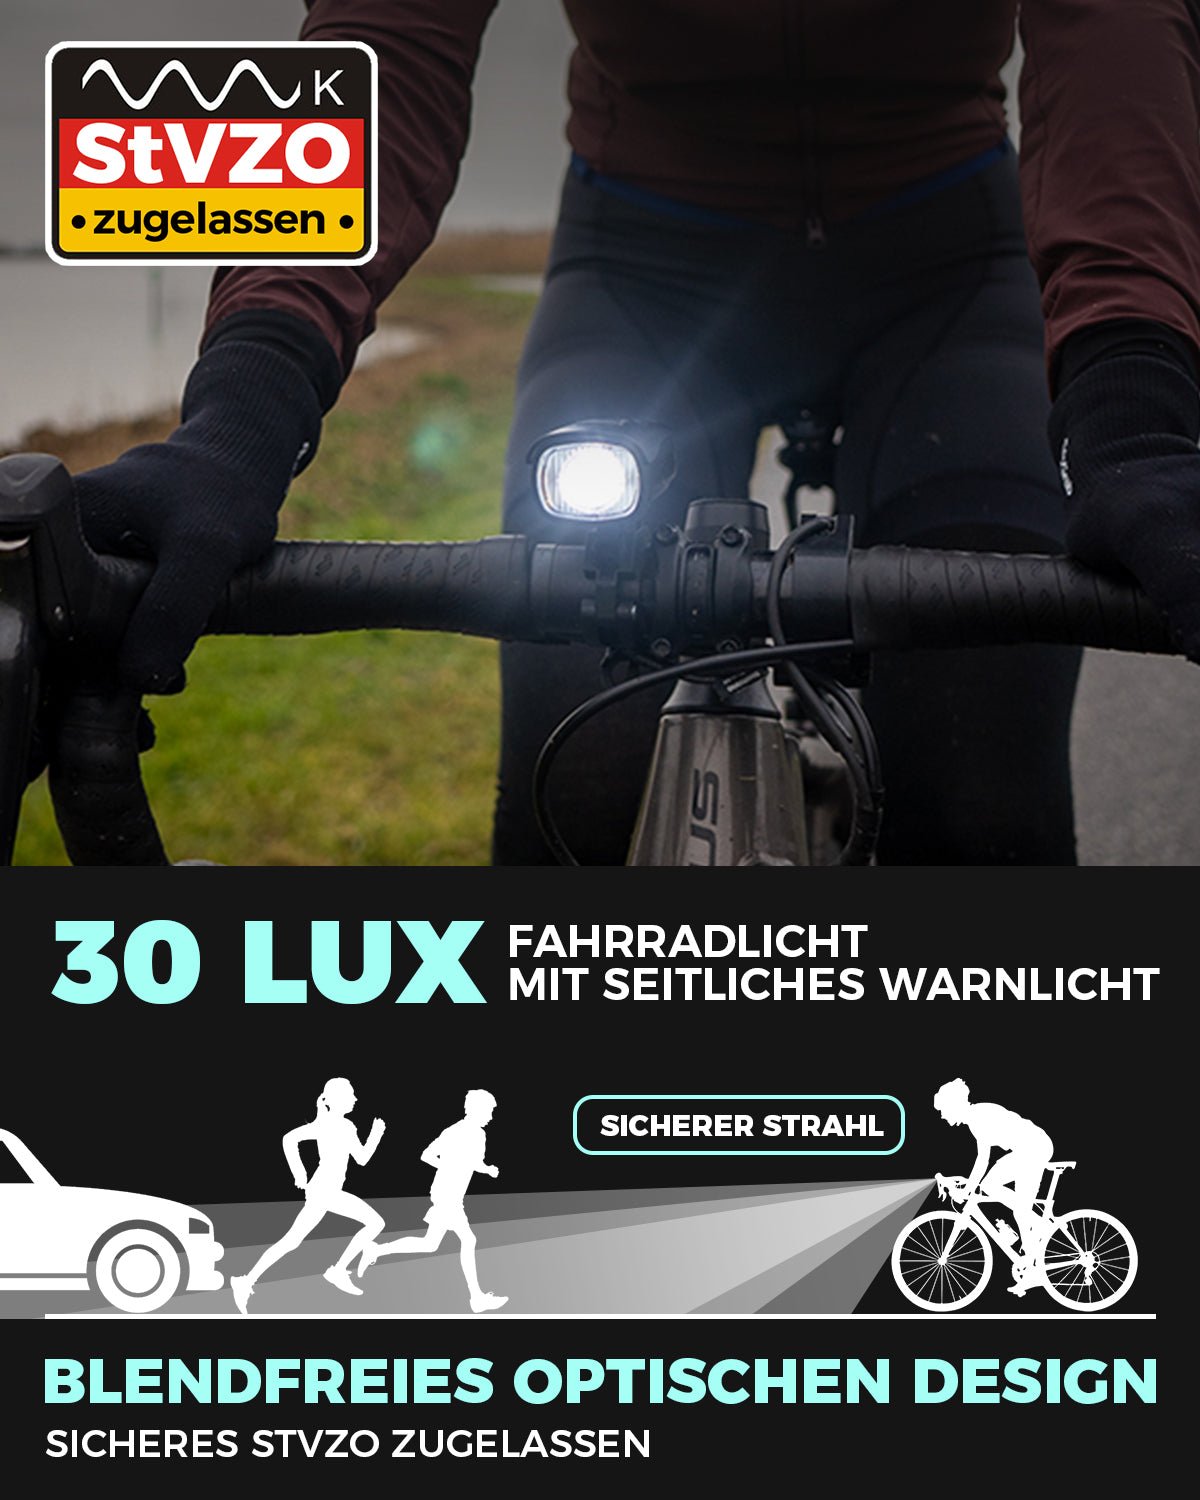 Stvzo Bike Lights Set with Front & Rear Lights 30 Lux Lights VICTGOAL lights